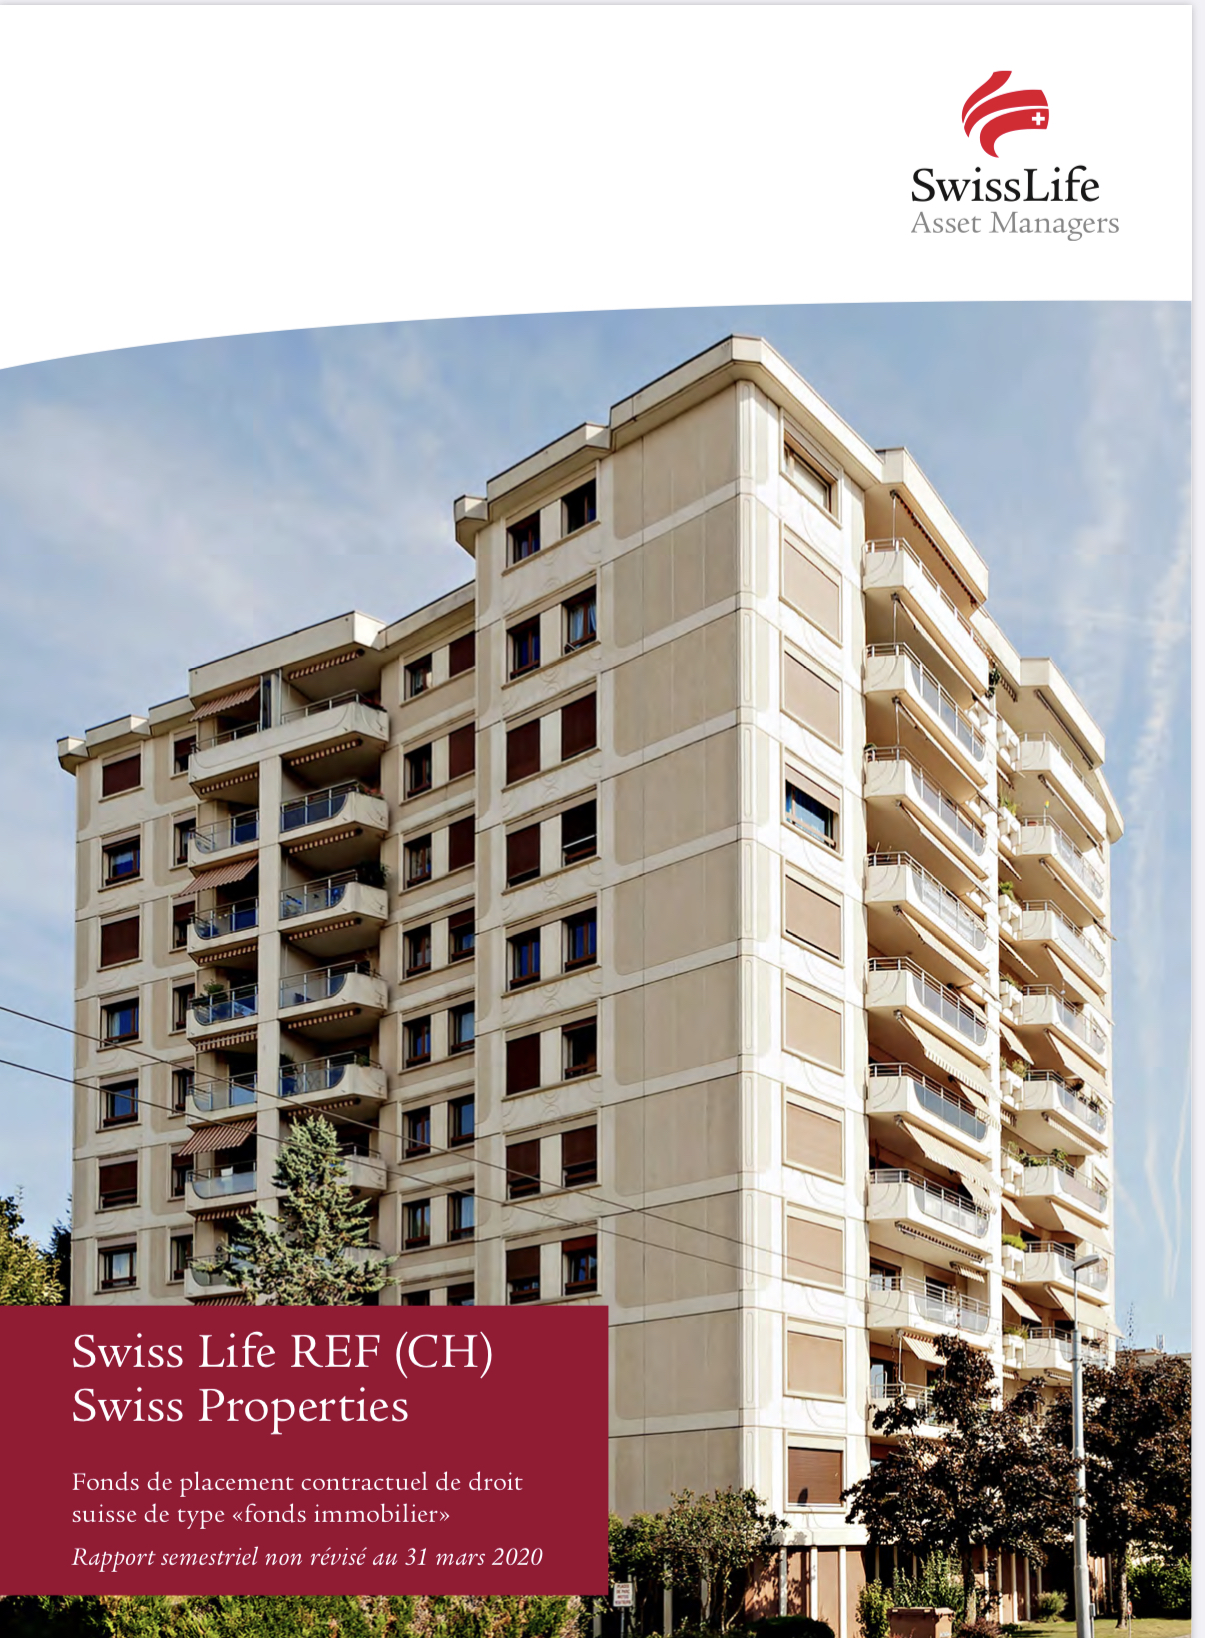 Swiss Life REF (CH) Swiss Properties : solide rapport semestriel avec taux d’occupation élevé